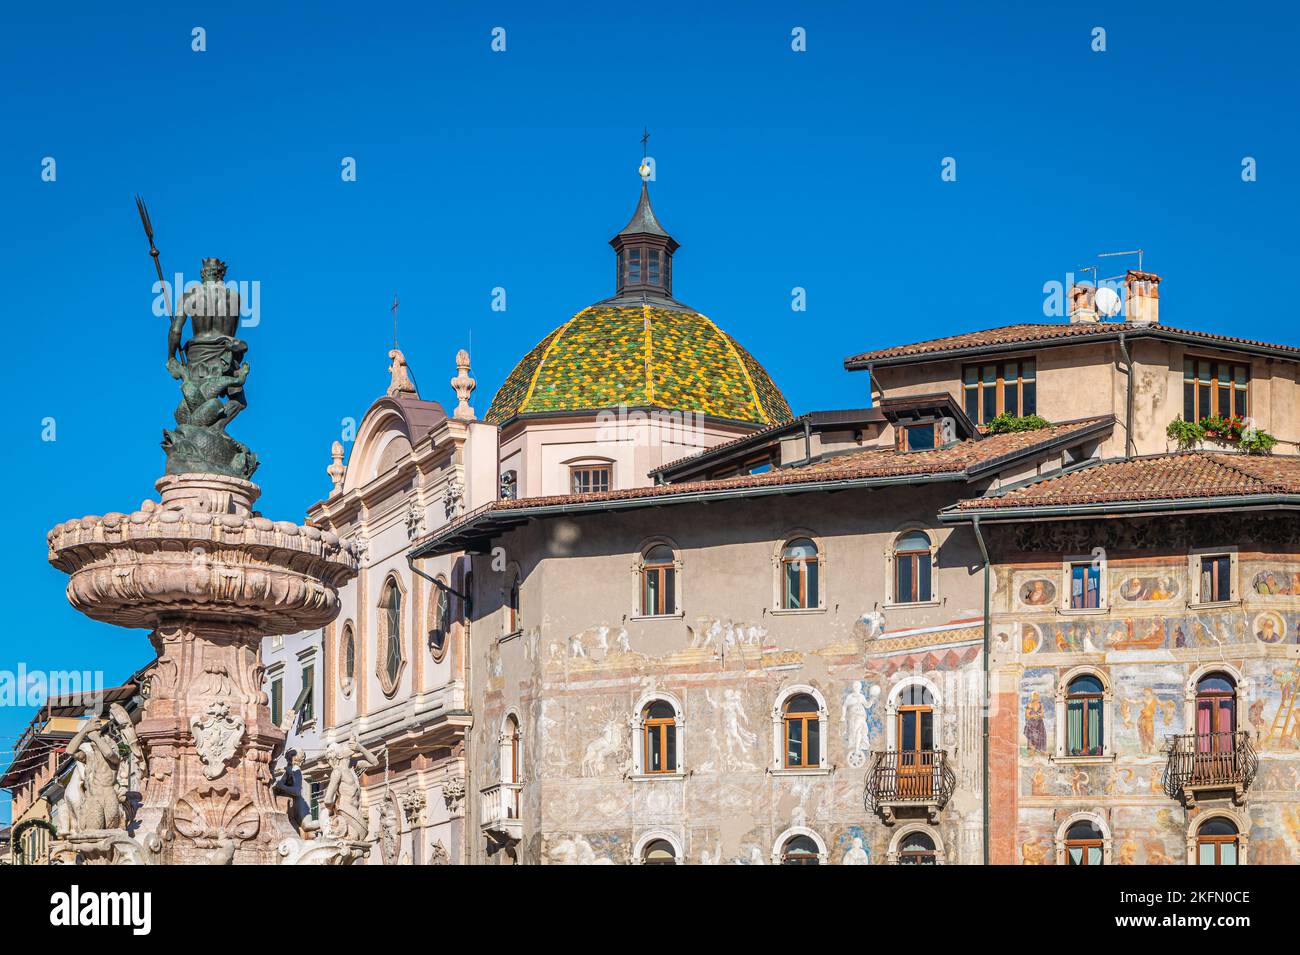 Ciudad de Trento: Vista de la plaza del Duomo y la fuente de Neptuno con la gente. Trento es una capital de la provincia de Trentino Alto en el norte de Italia - Foto de stock